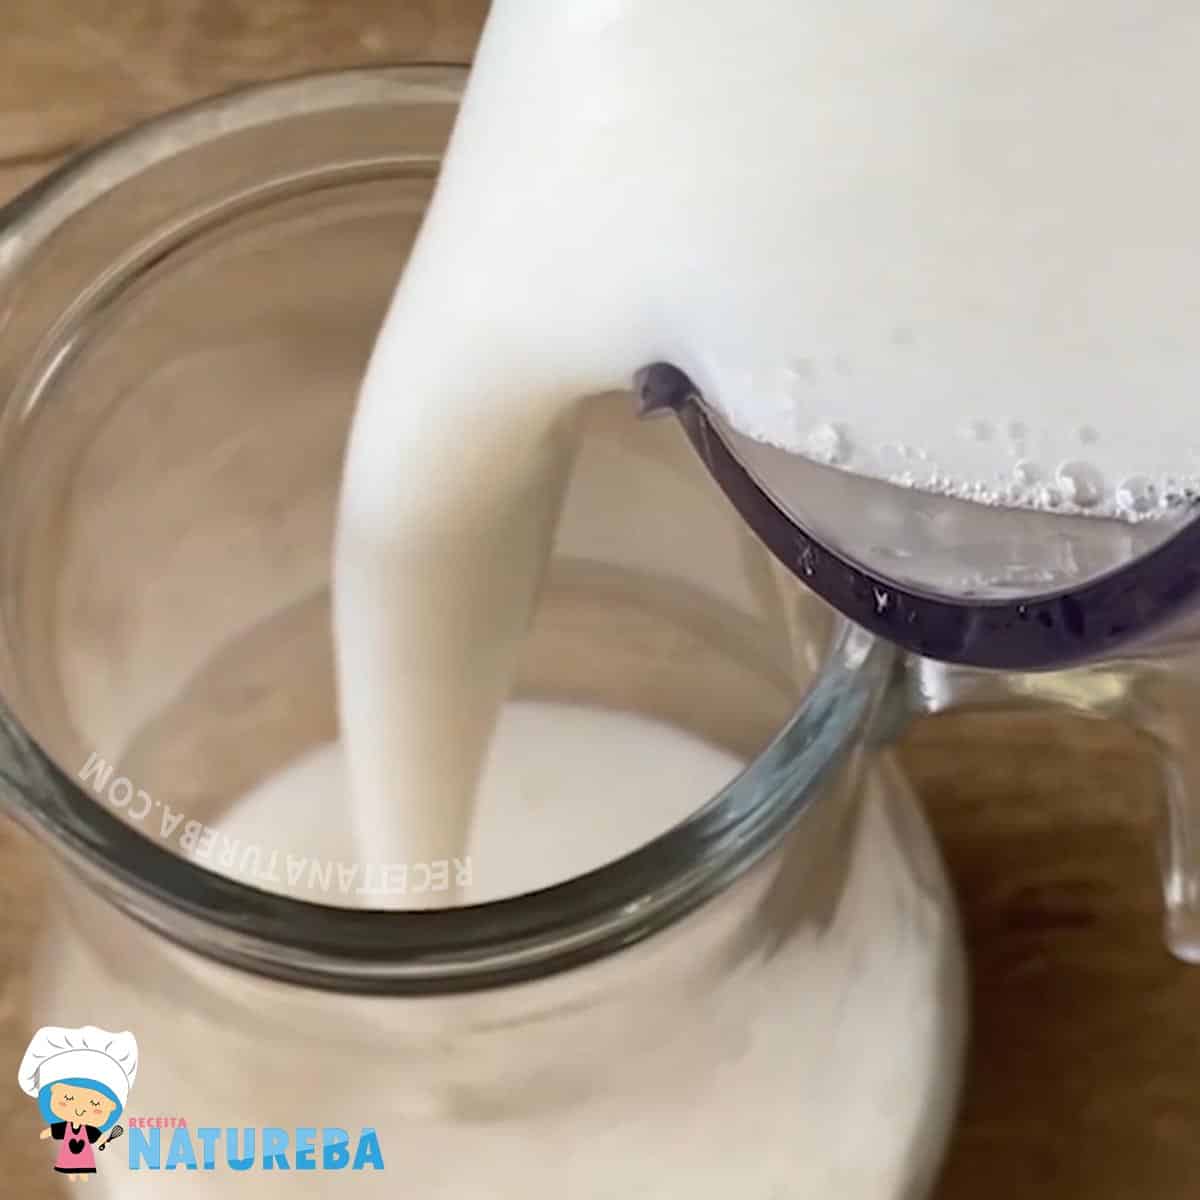 transferindo o leite de inhame batido para uma jarra